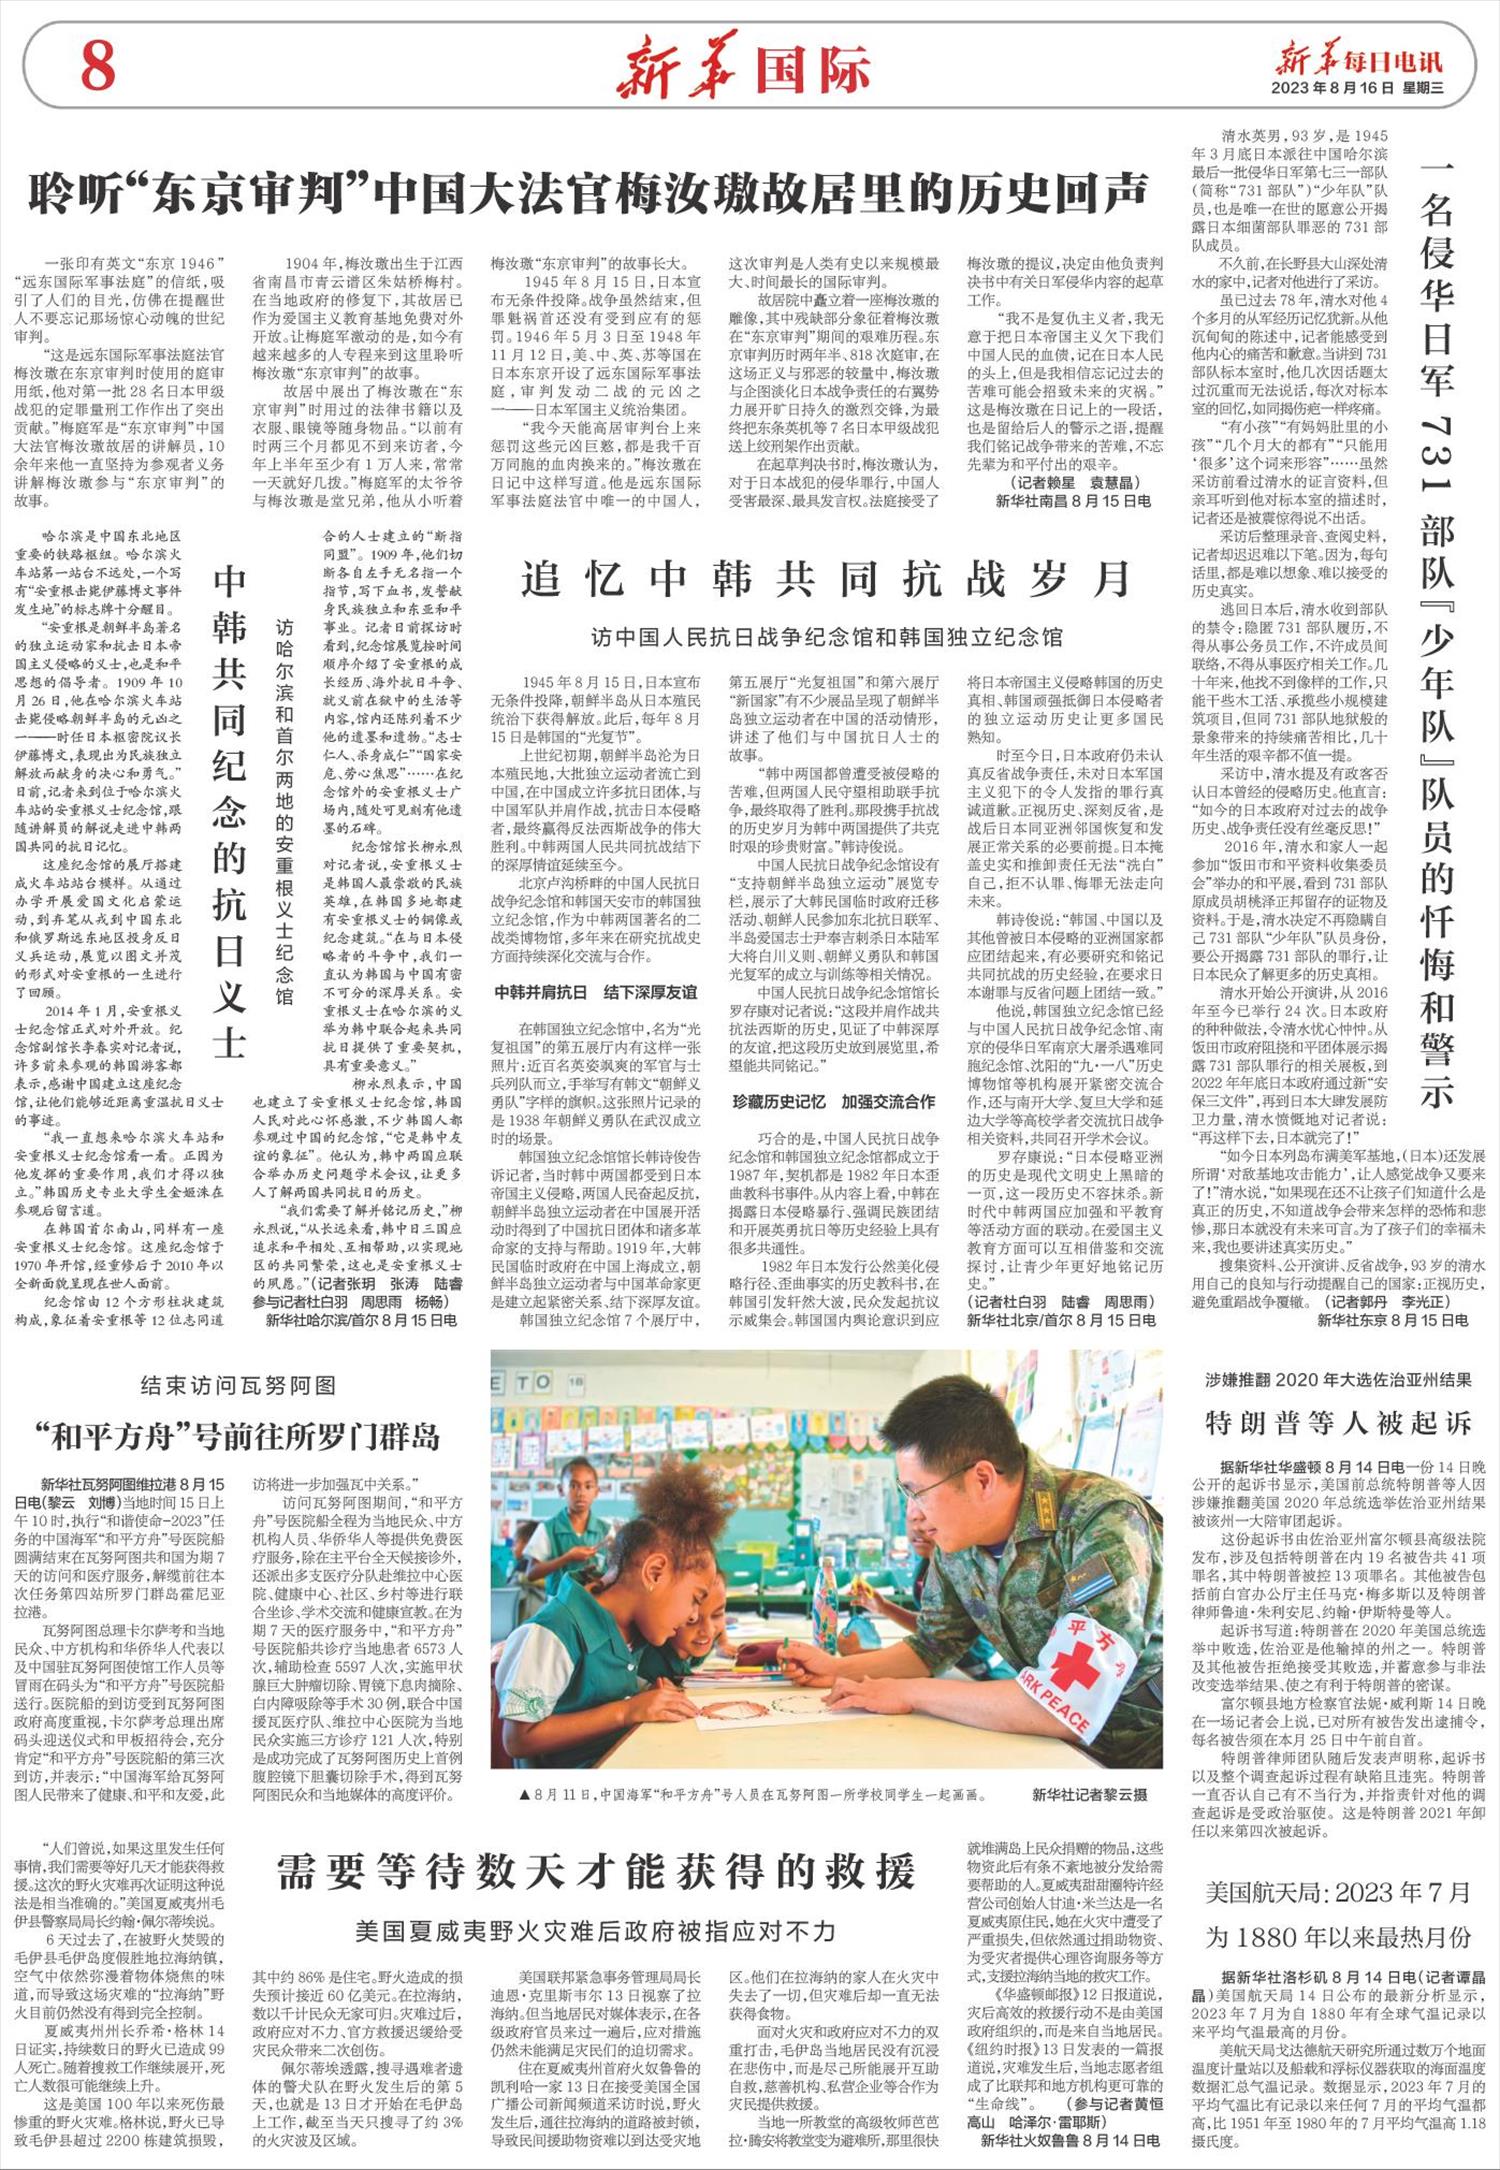 新华每日电讯-微报纸-2023年08月16日